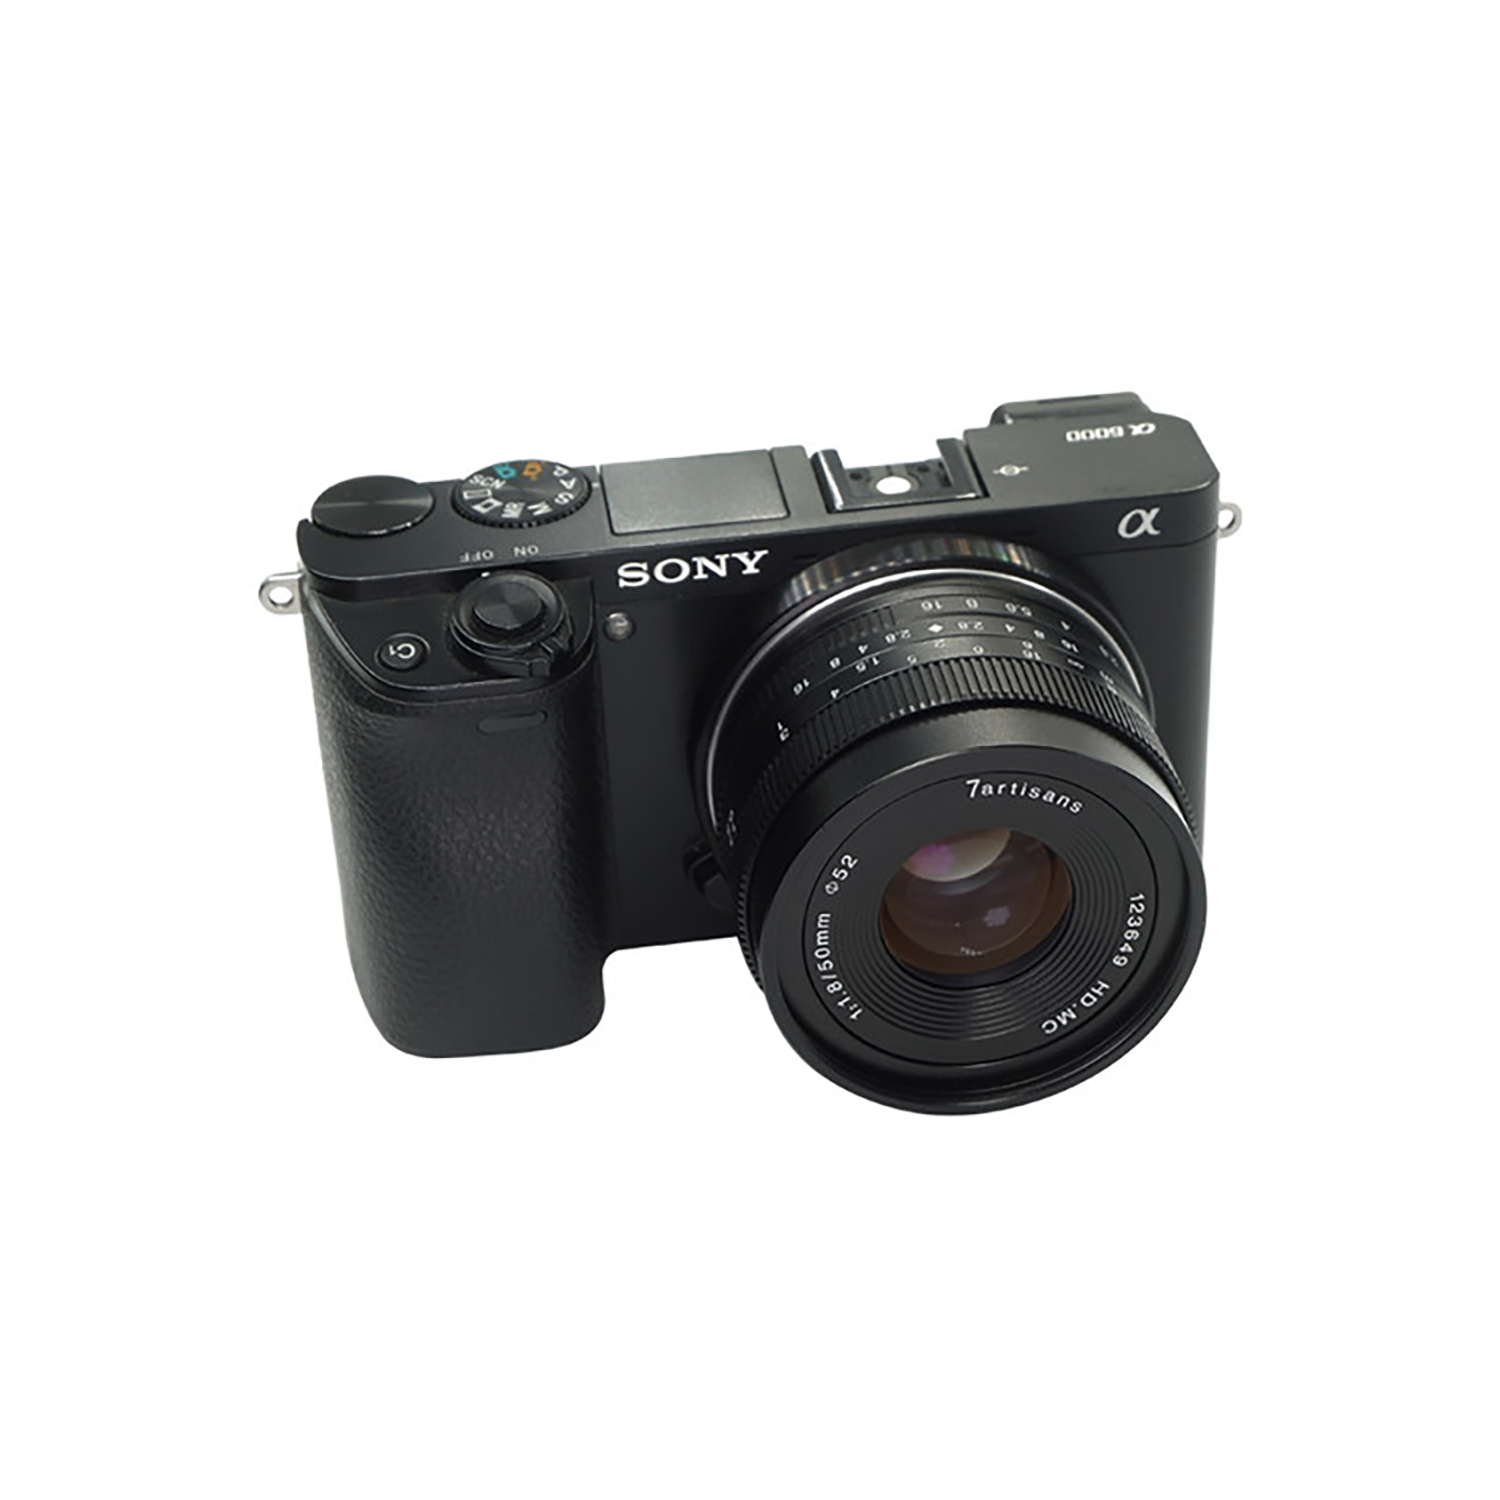 7artisans photoélectrique 50 mm f / 1,8 objectif pour le support Sony E